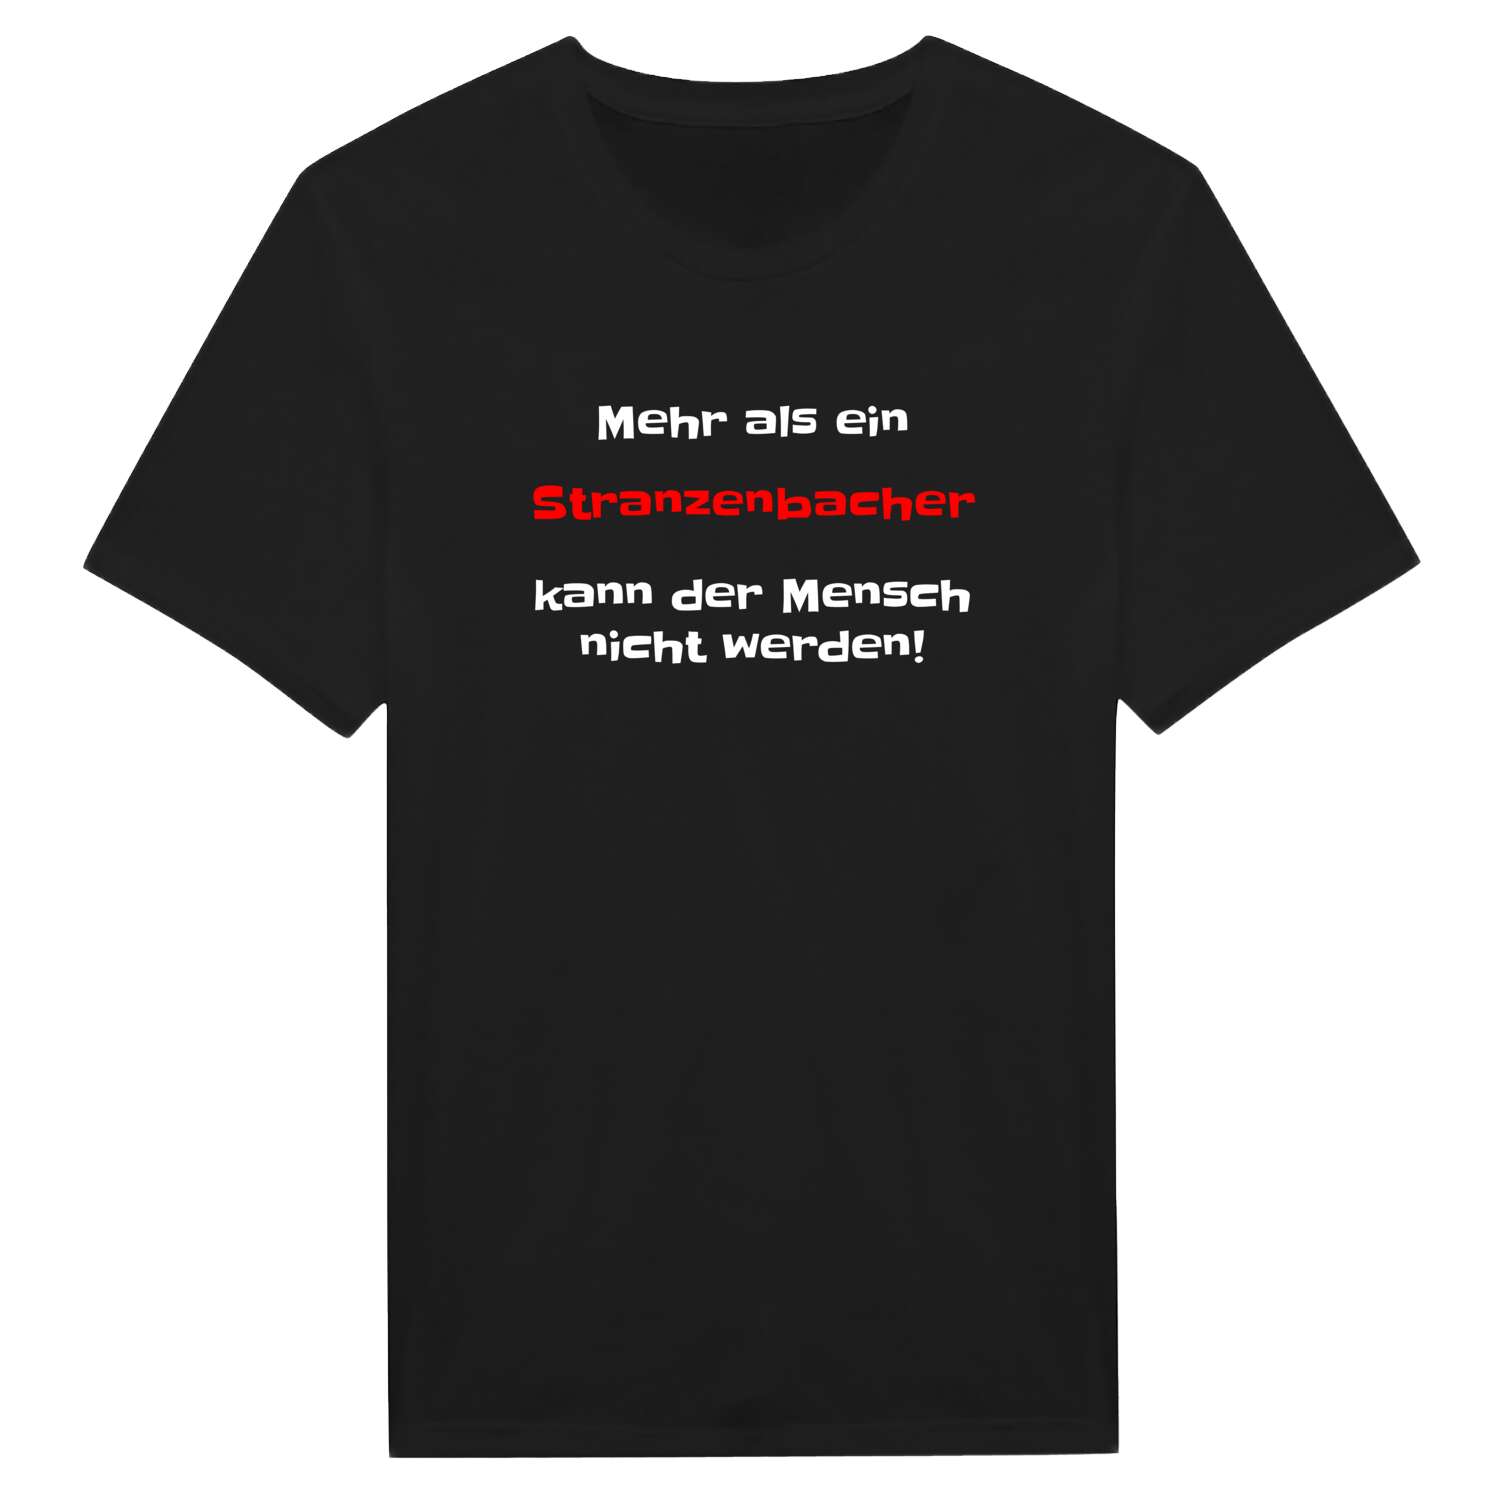 Stranzenbach T-Shirt »Mehr als ein«